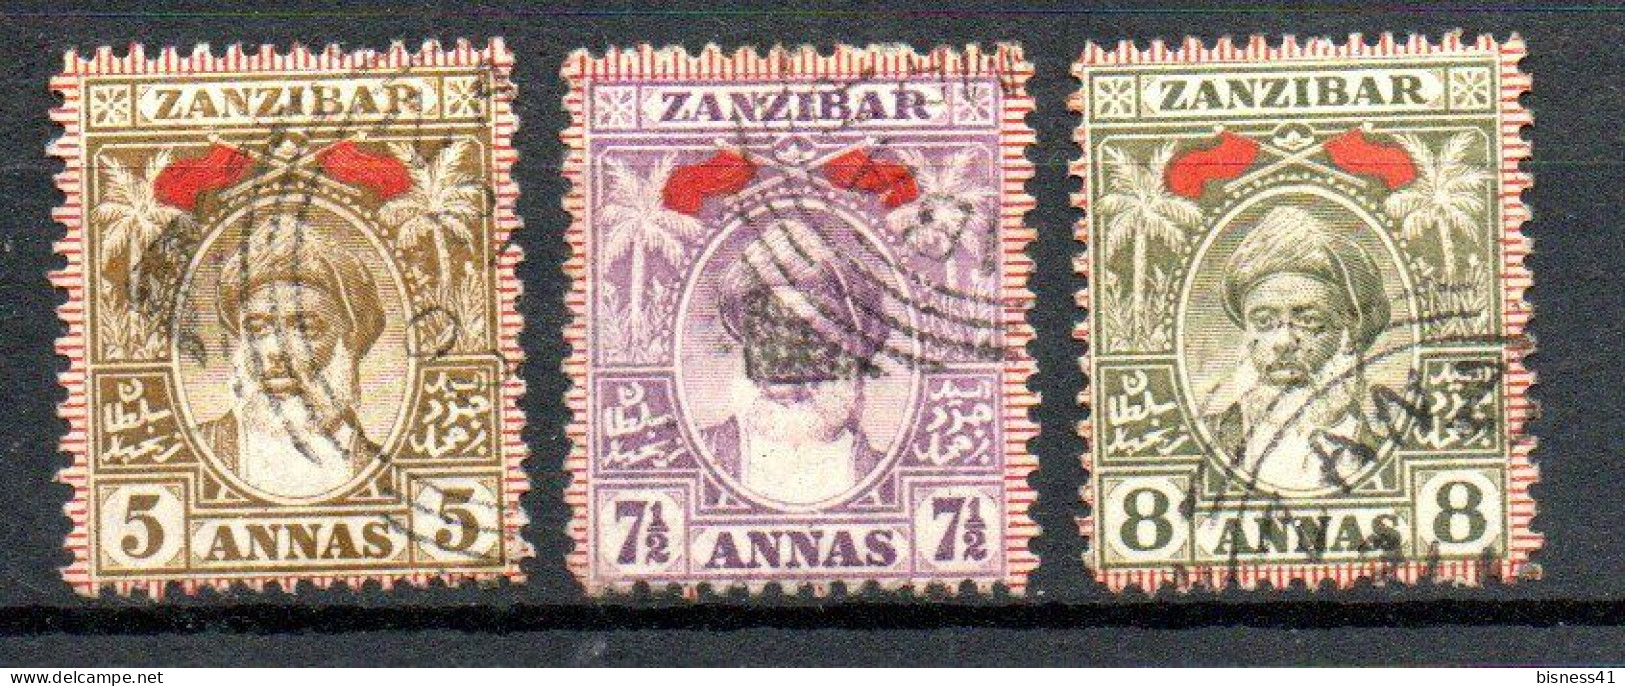 Col33 Zanzibar Britannique 1899 N° 62 à 64 Oblitéré Cote : 13,00€ - Zanzibar (...-1963)